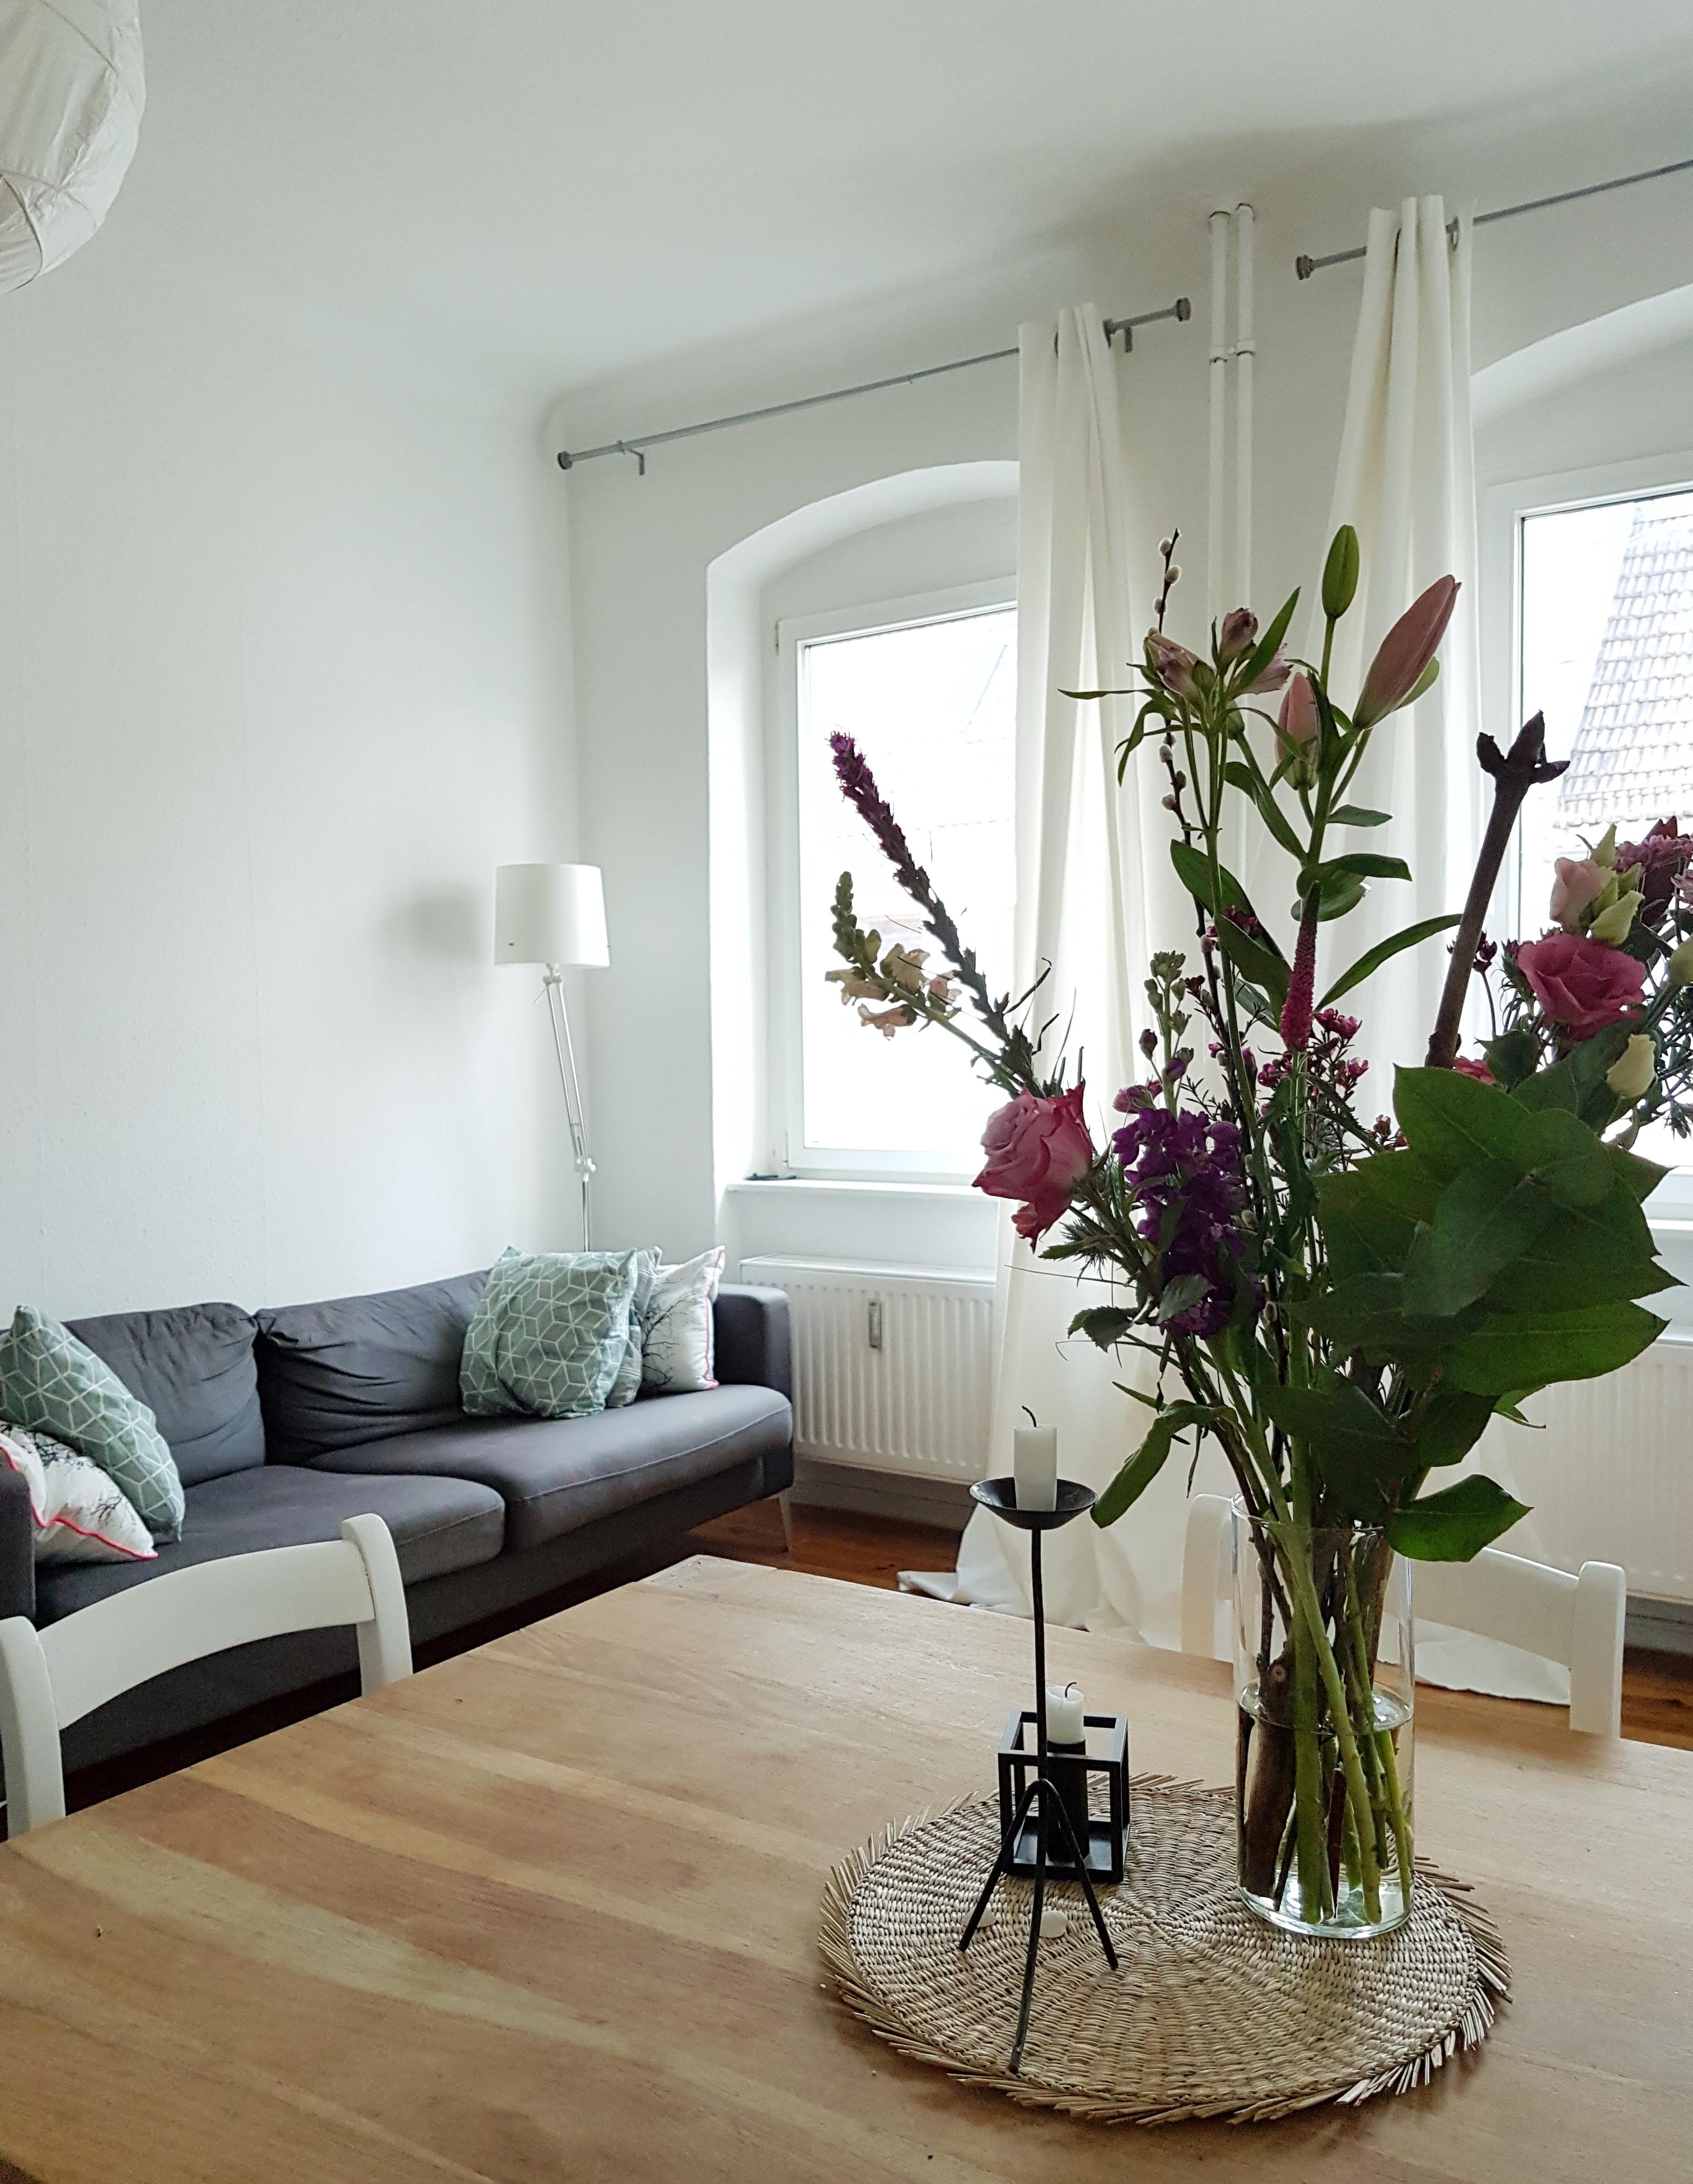 Unser Wohnzimmer 💕 #Wohnzimmer #livingroom #Altbau #Blumen #Blumenliebe #hygge #cozy